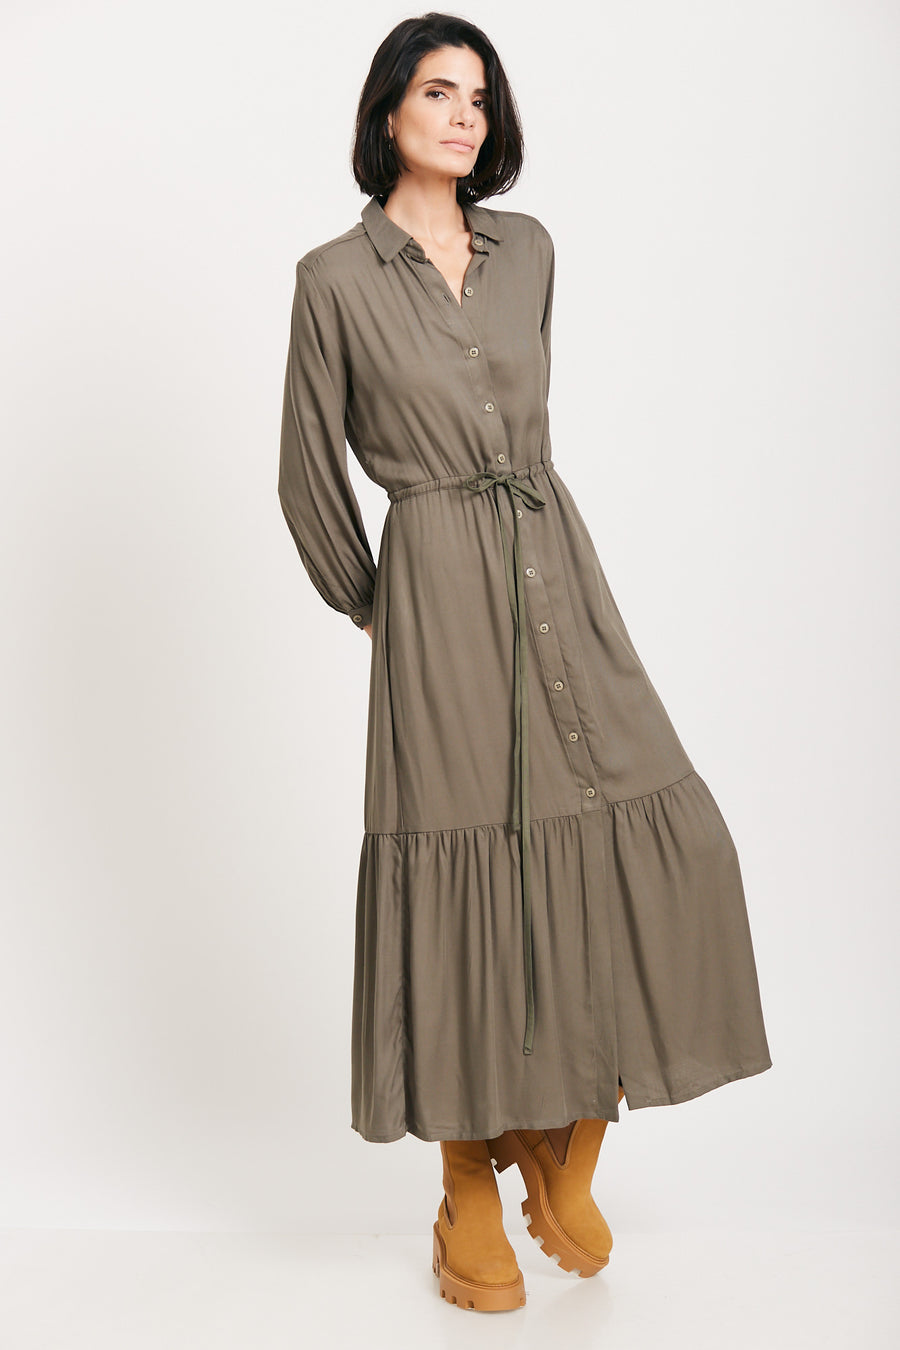 Olive Tory Maxi dress